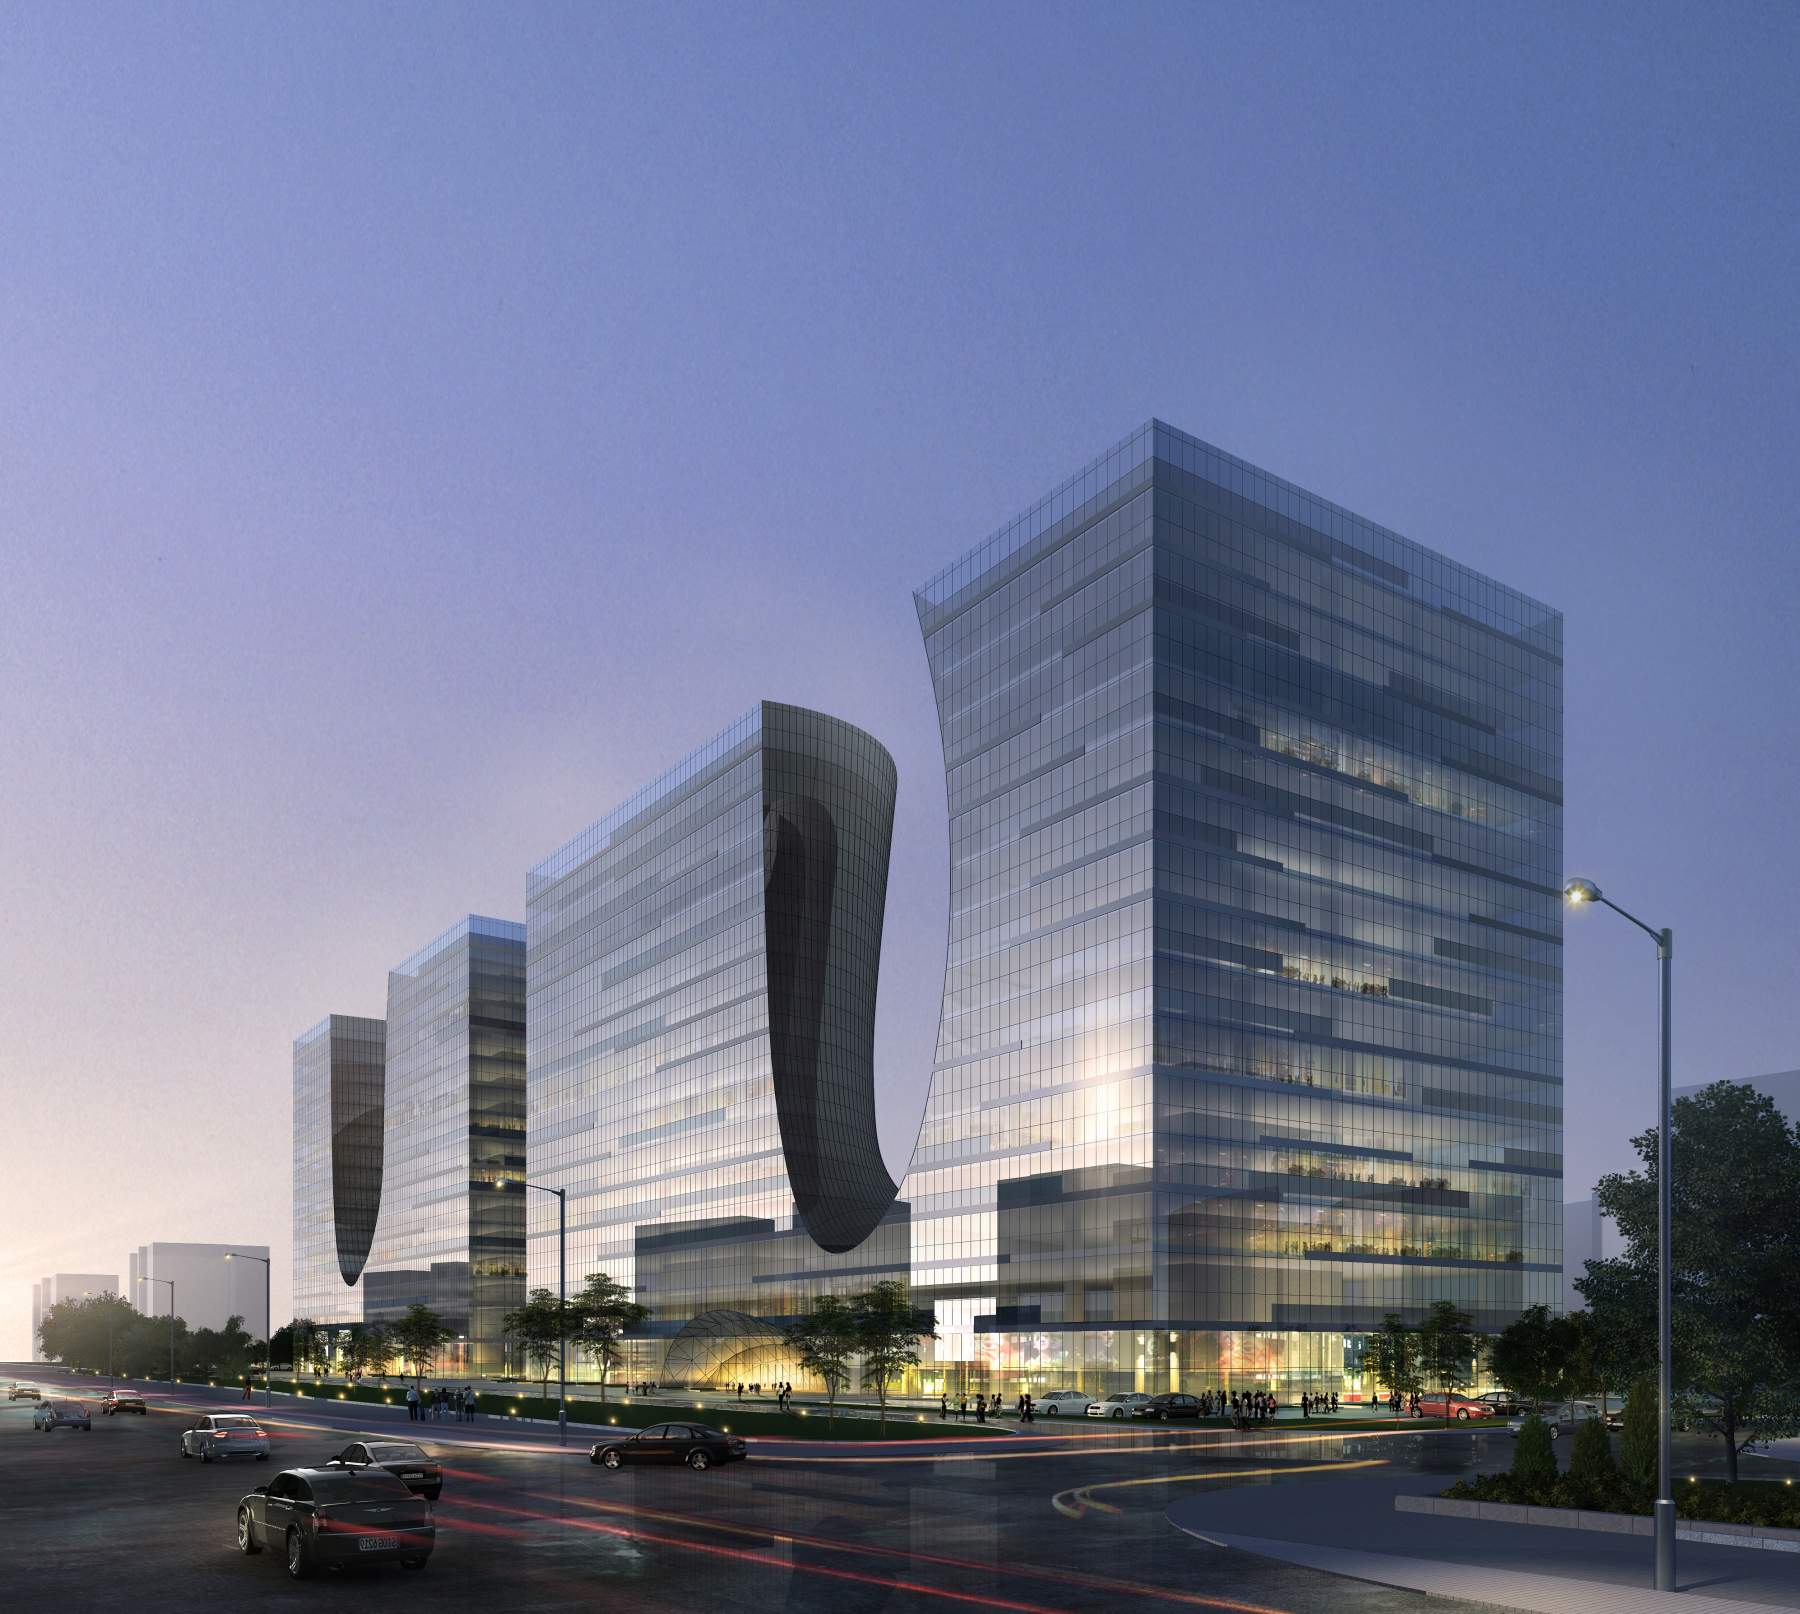 现代高层商业办公楼3dmax 模型下载-光辉城市